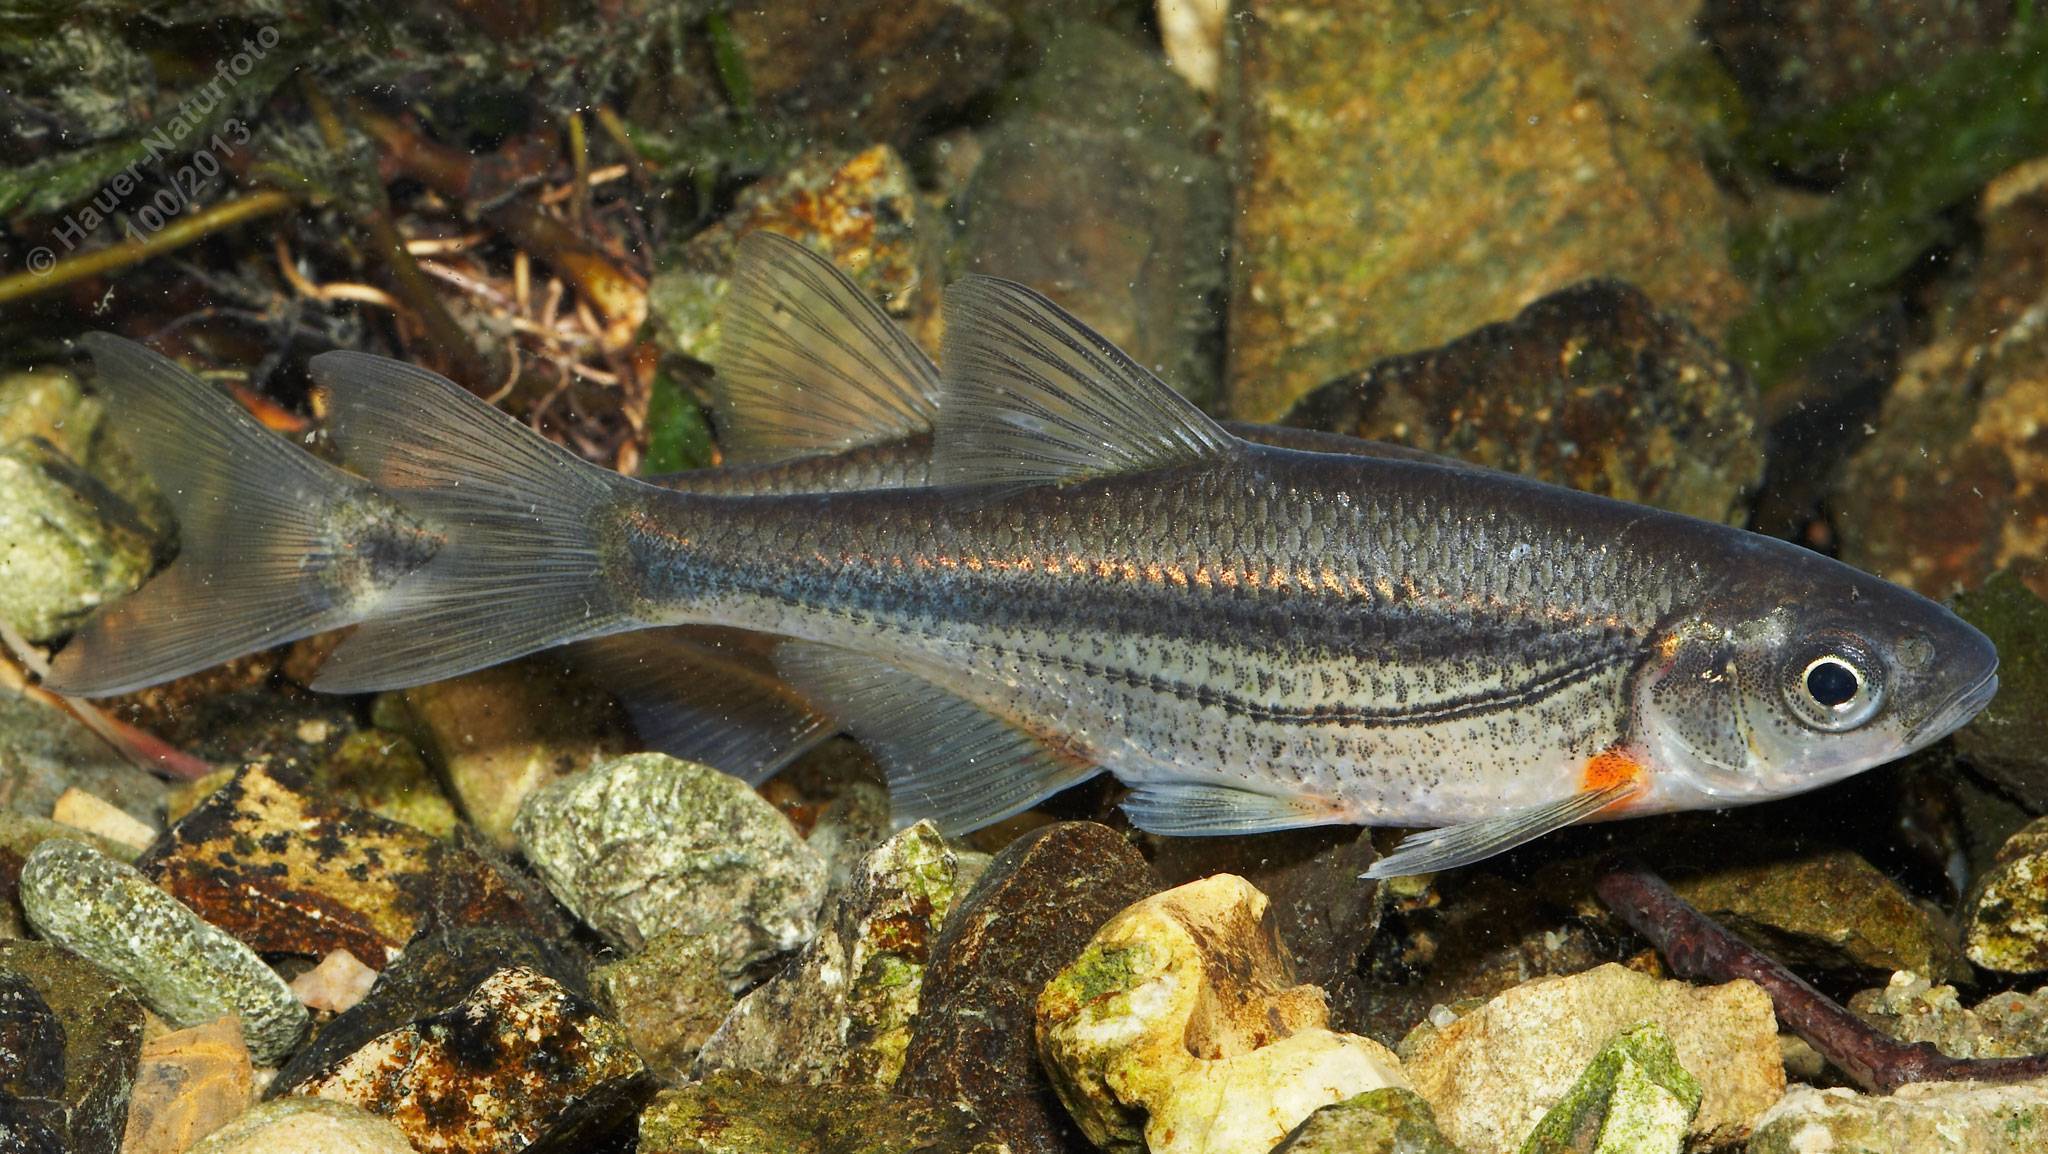 Царская рыба бирюк - легендарный донской ерш-носарь, утративший хозяйственное значение